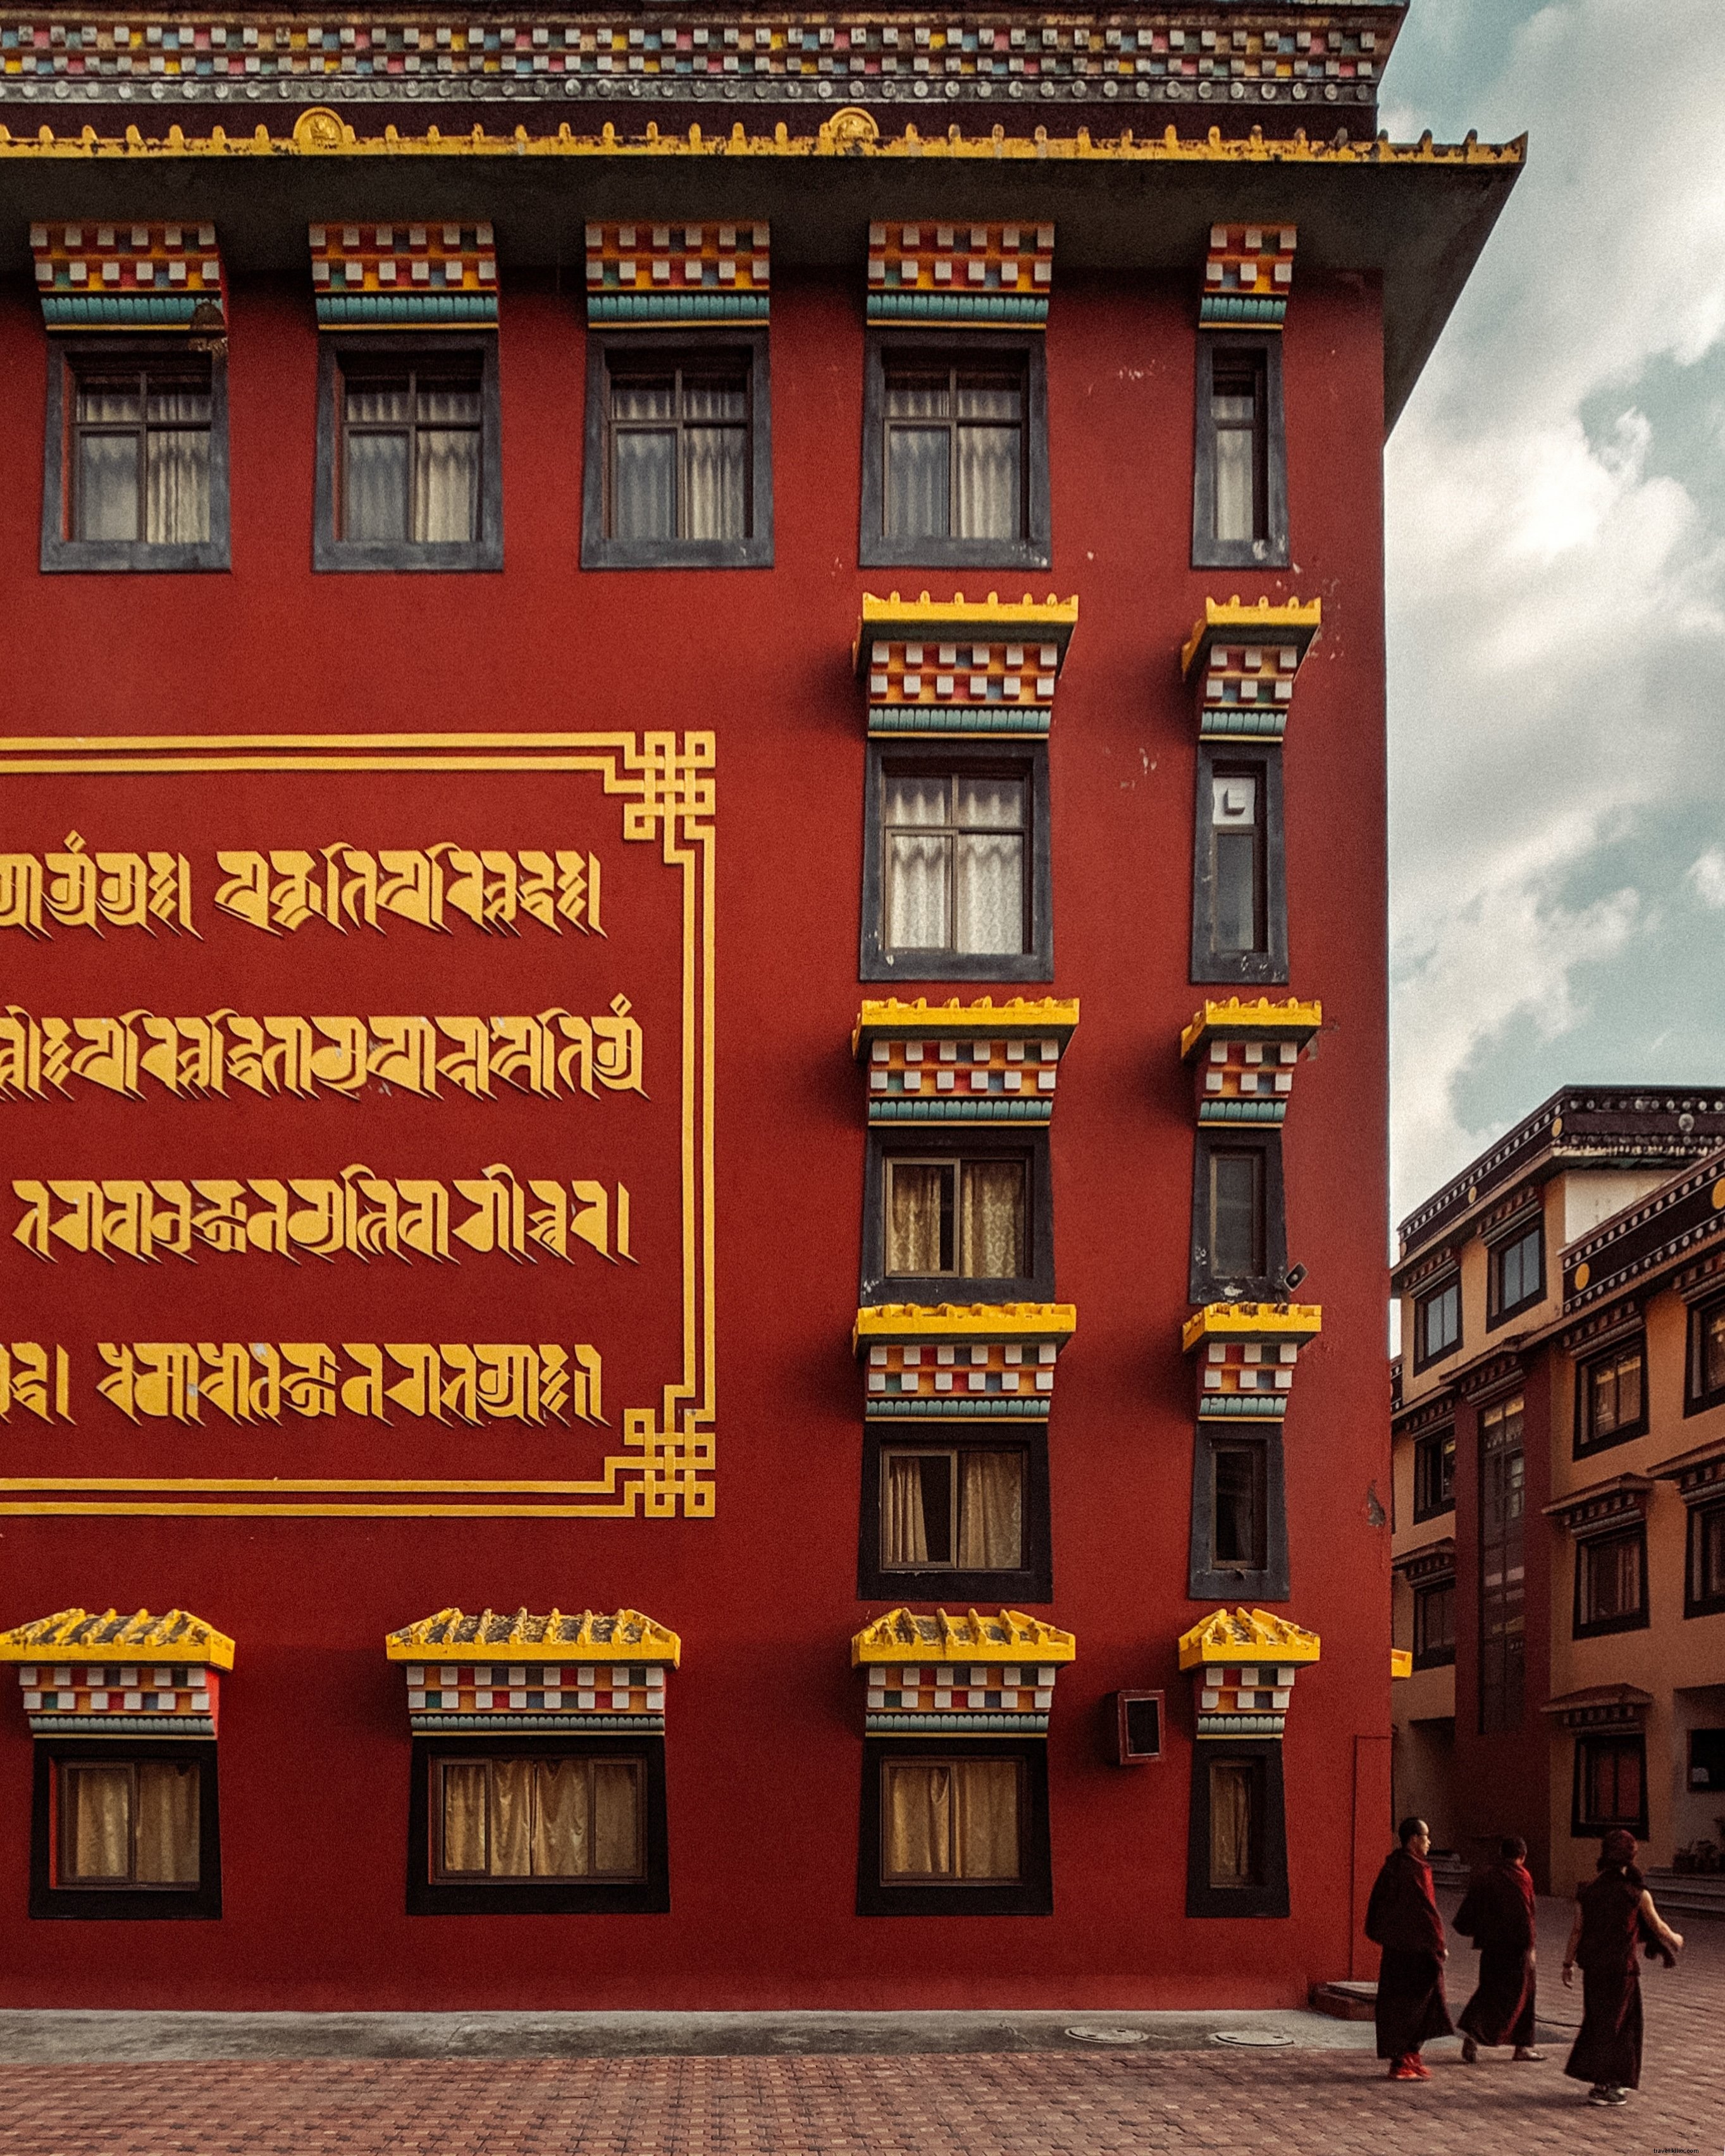 Um edifício carmesim com escrita dourada nas paredes da foto